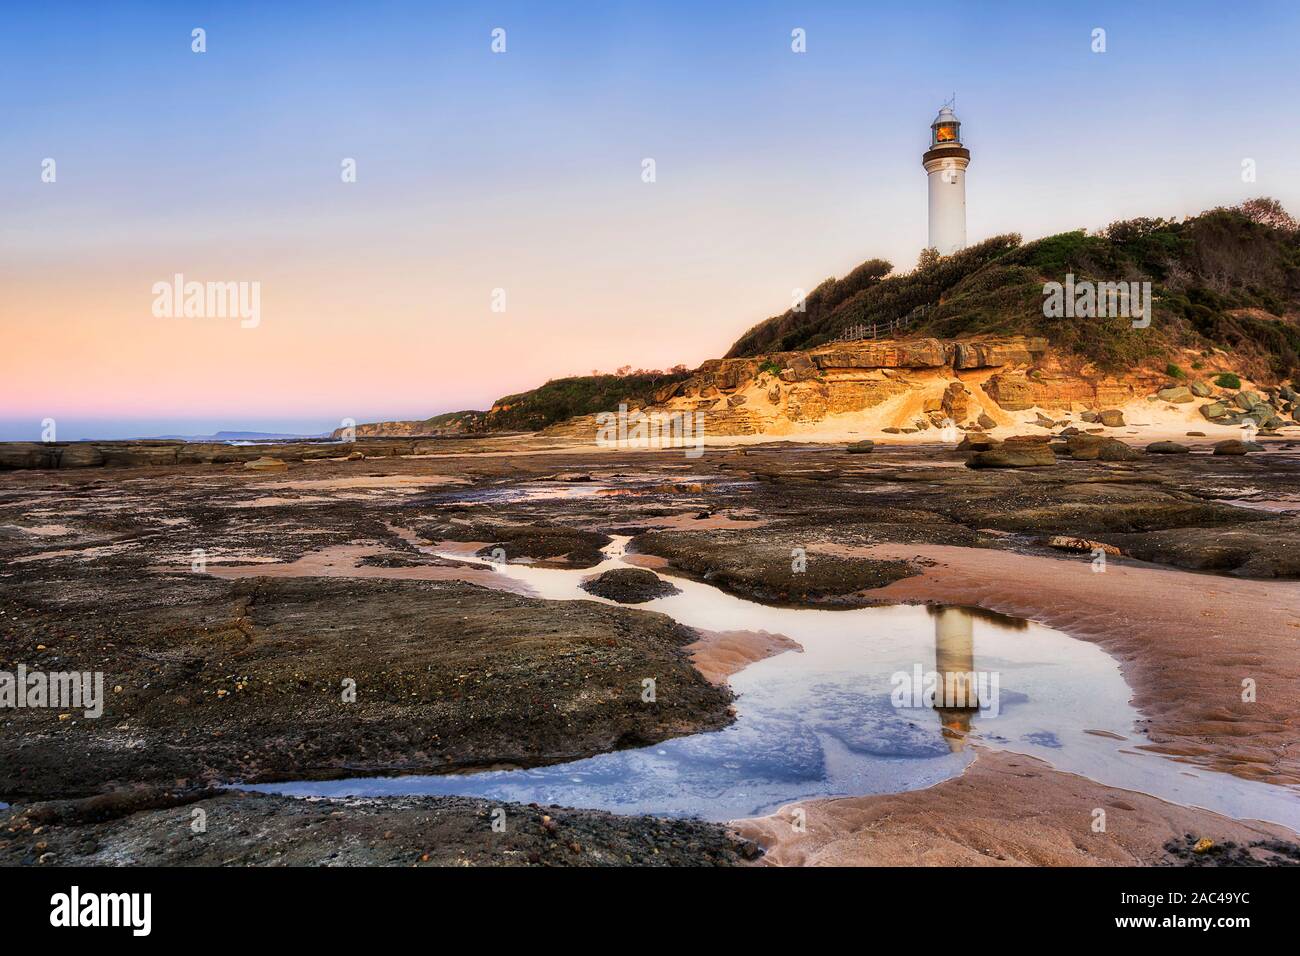 Meeresgrund bei Ebbe verlassen Salz Wasser Pfütze weißen Leuchtturm und rosa Himmel bei Sonnenaufgang auf australischen Pazifikküste zu reflektieren - Norah Landspitze, die Cen Stockfoto